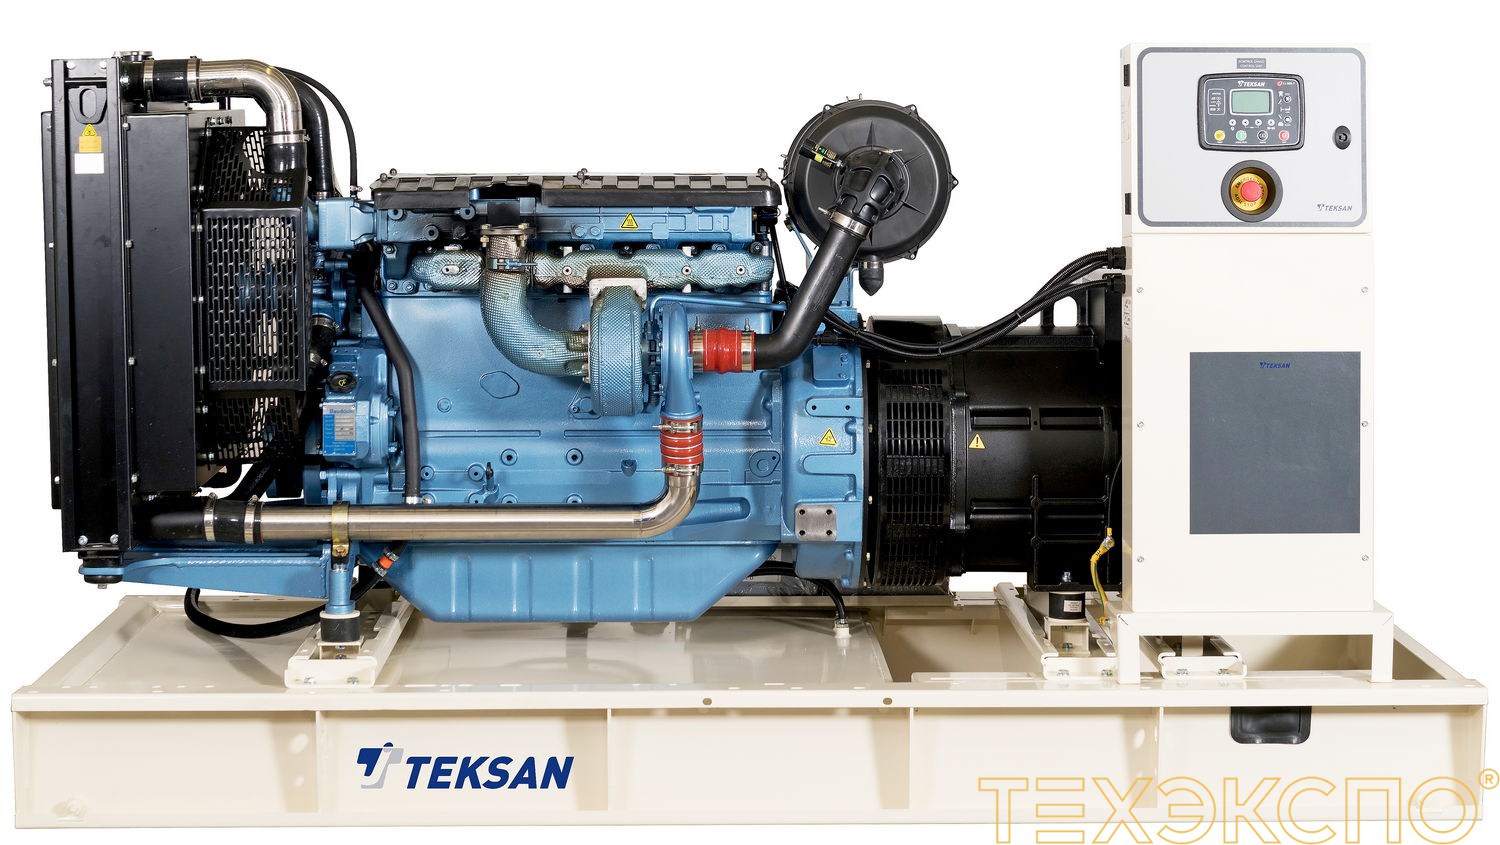 Teksan TJ350BD5C - ДЭС 256 кВт в Санкт-Петербурге за 2 752 878 рублей | Дизельная электростанция в Техэкспо